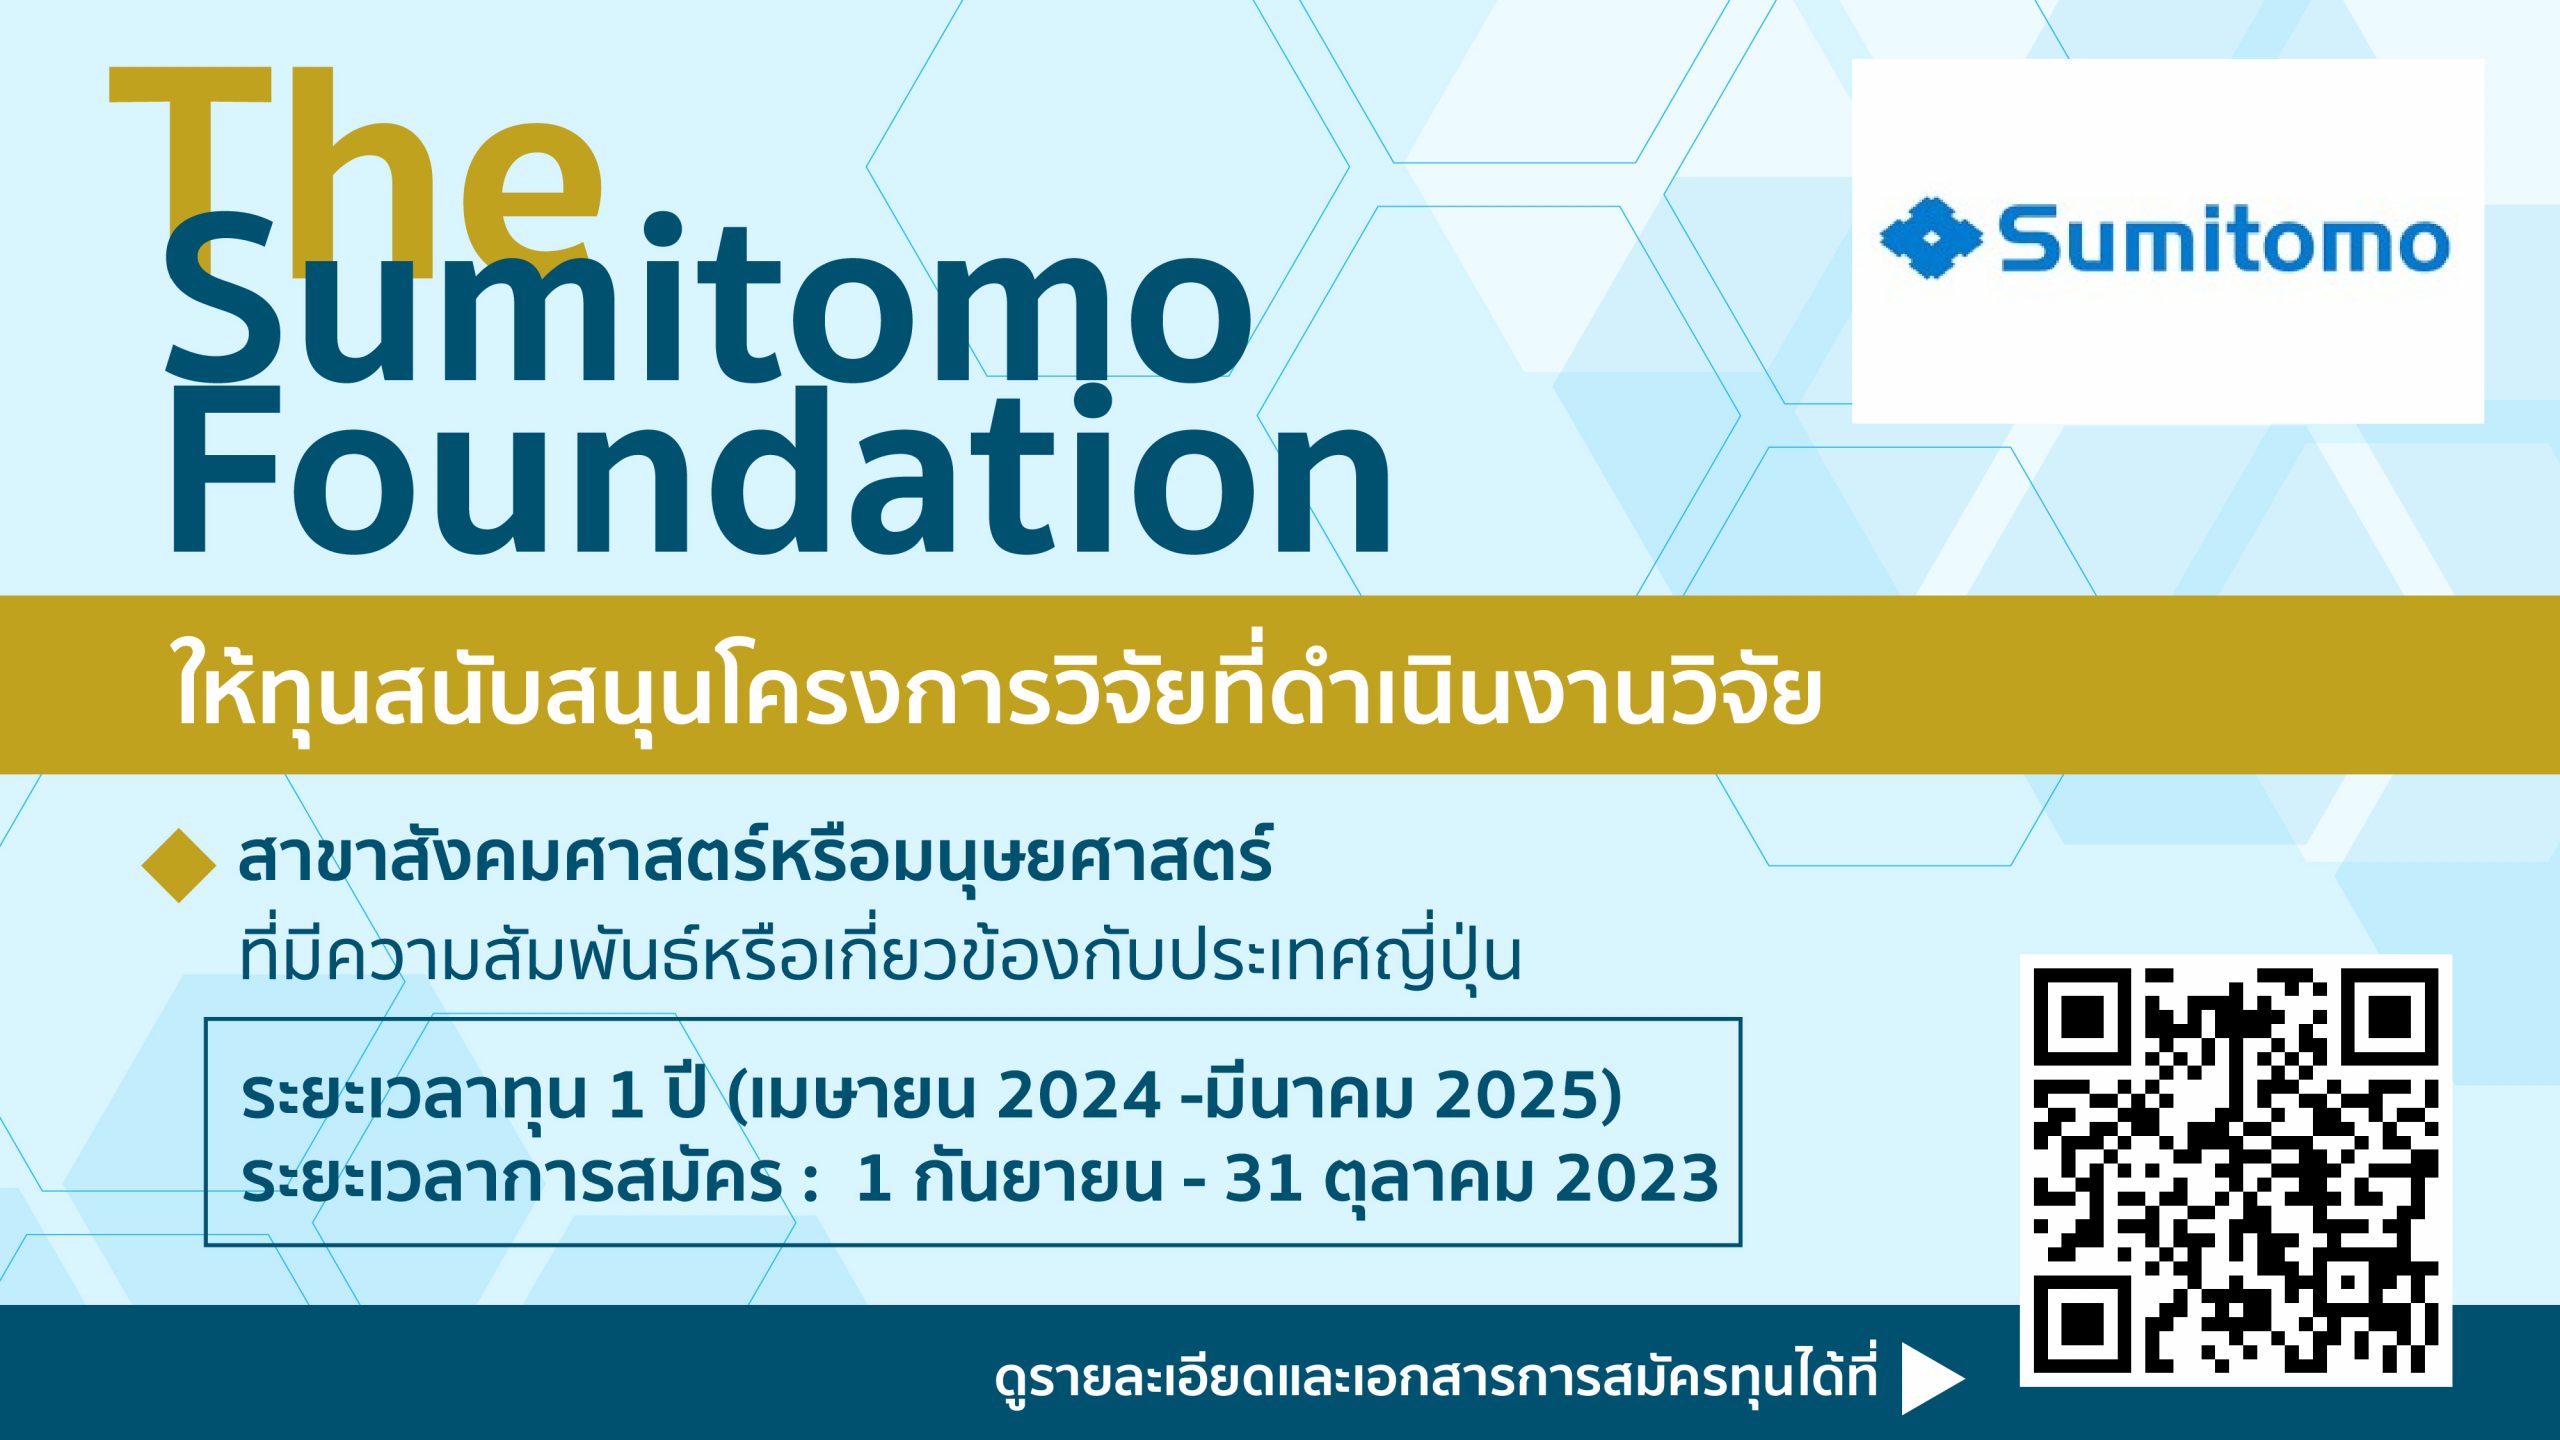 ทุน The Sumitomo Foundation ปี 2023